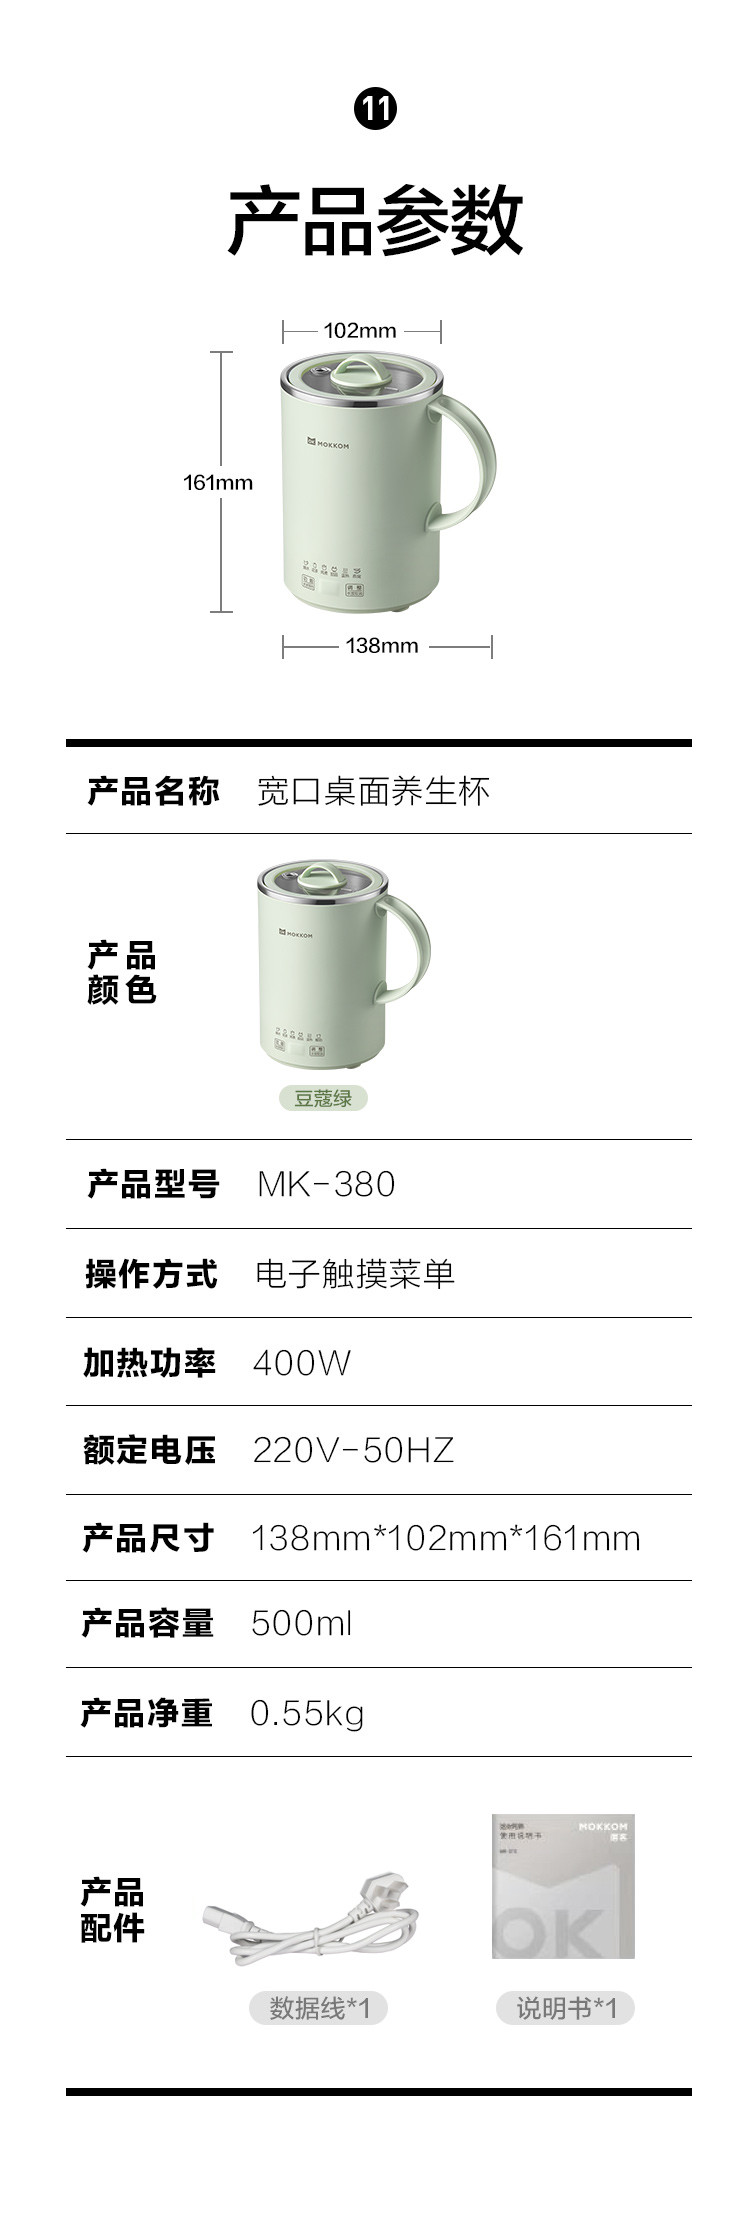 磨客 新款大容量便携电炖养生杯MK-380